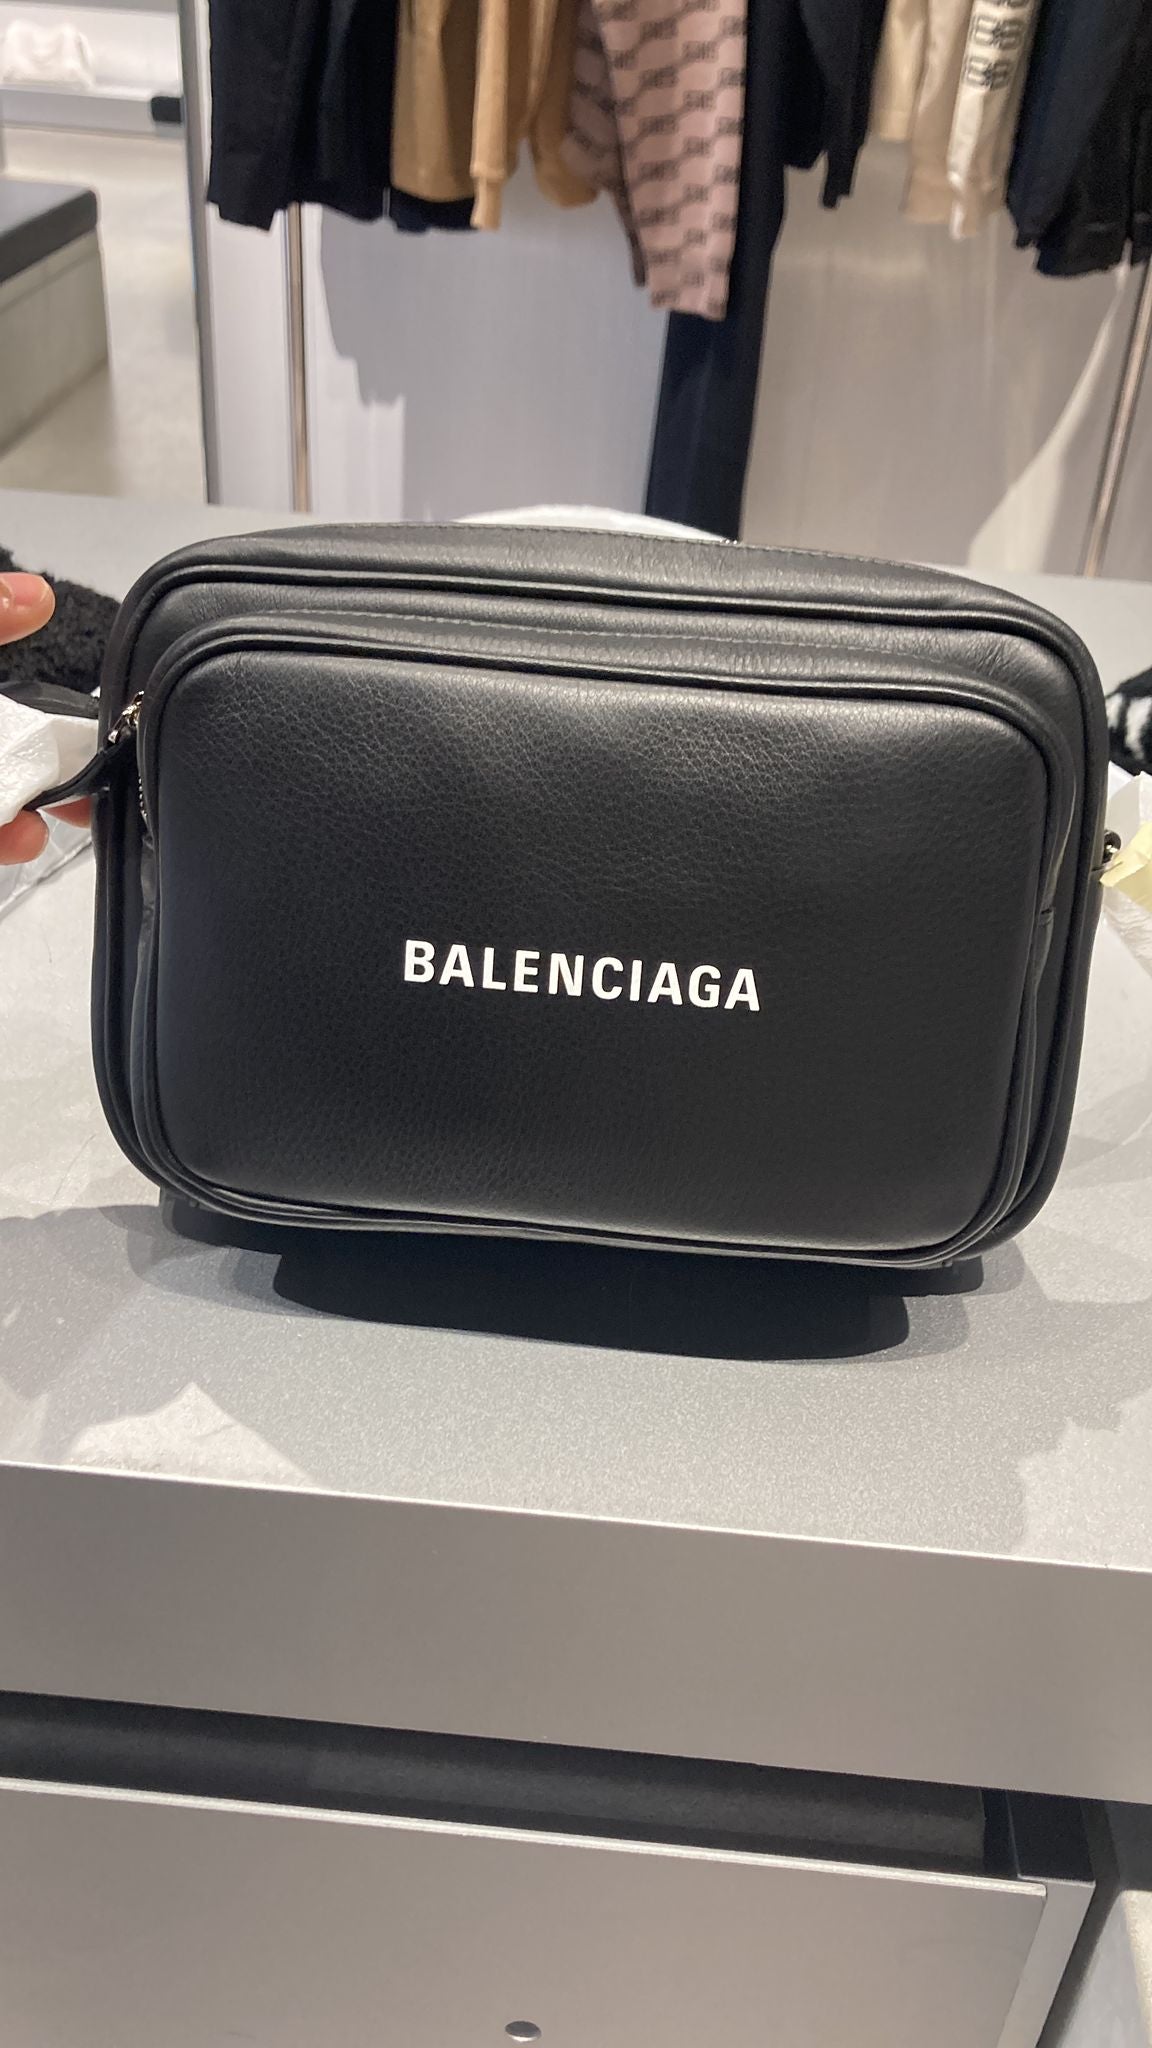 Balenciaga camera bag 巴黎世家相機包